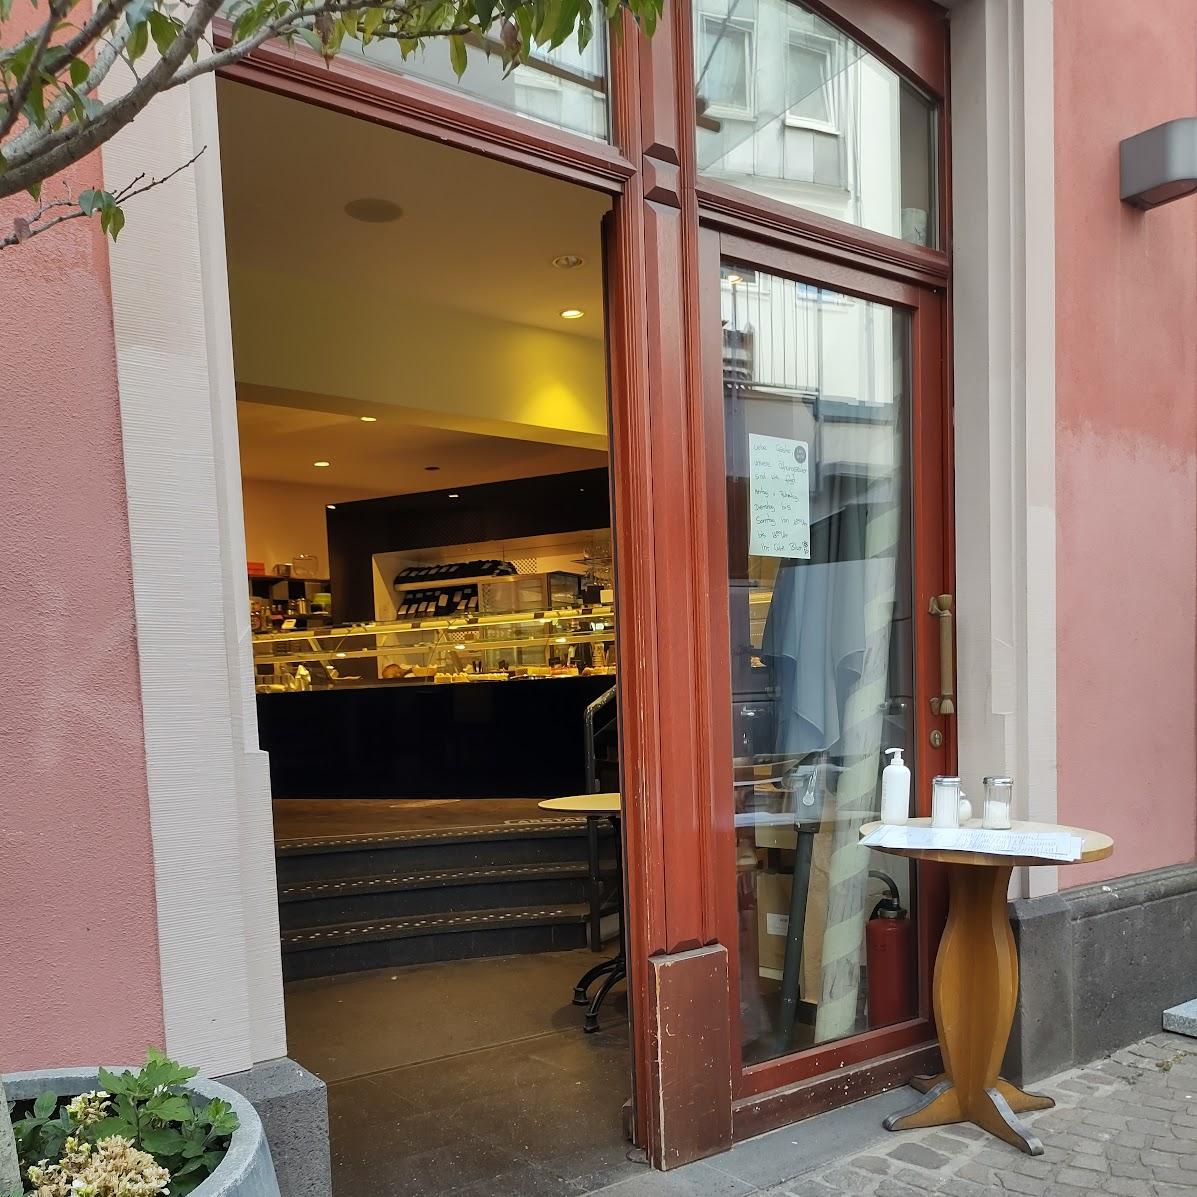 Restaurant "Café Blum Tatjana Kreuter GmbH" in Mainz